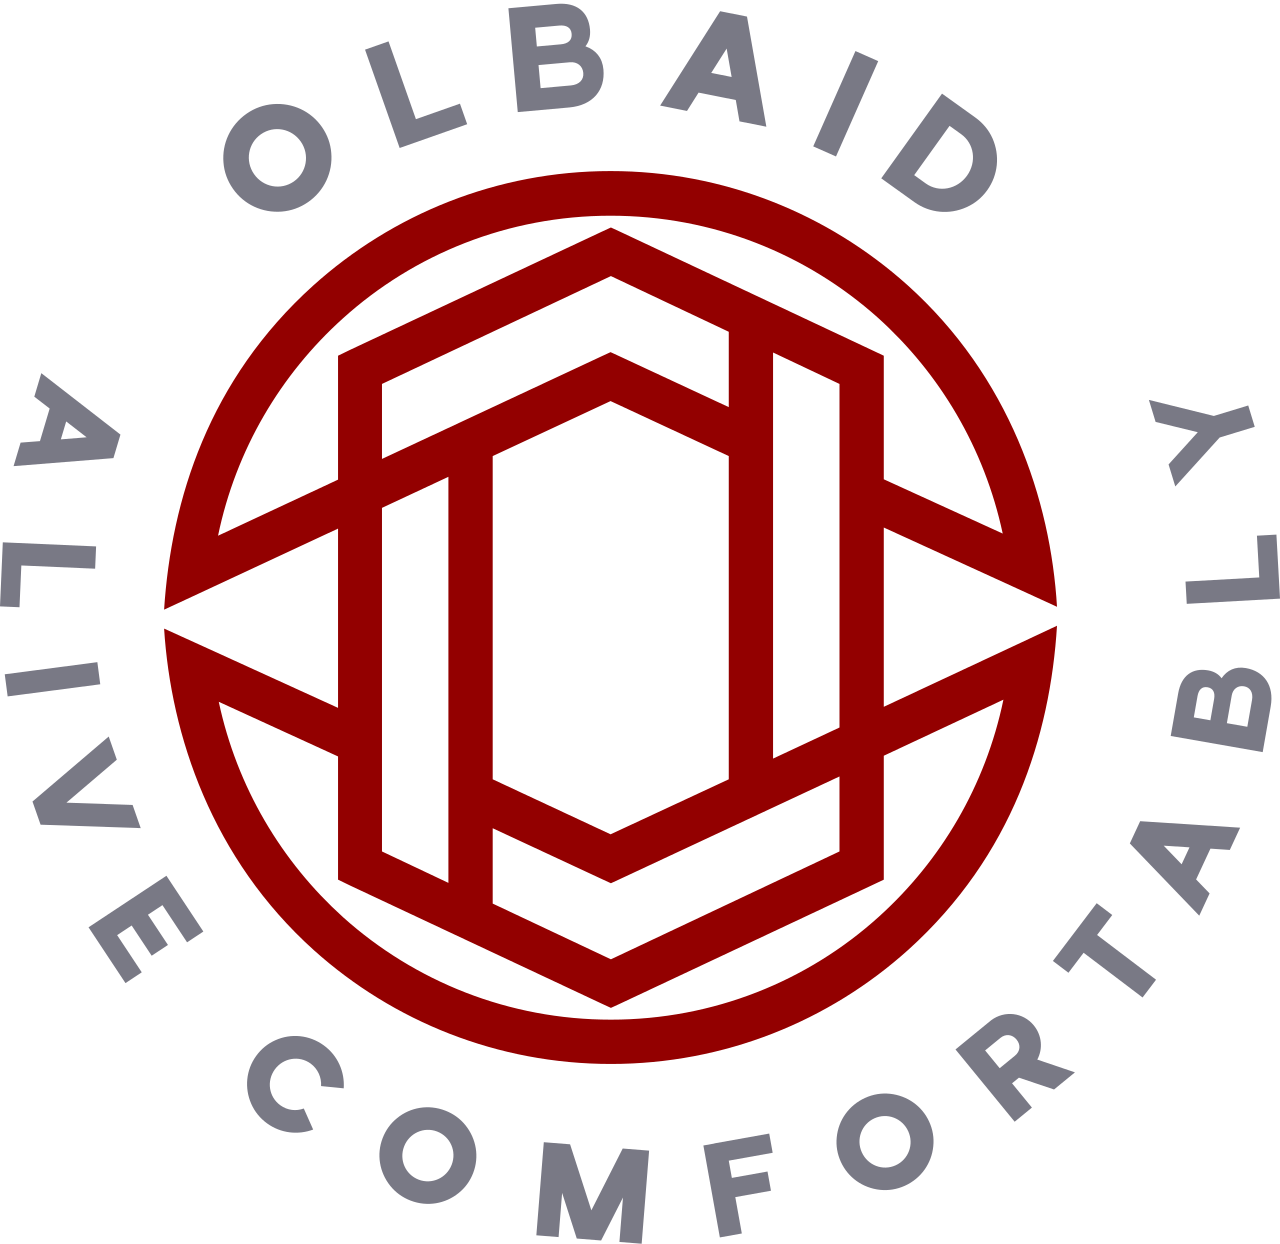 OLBAID's logo